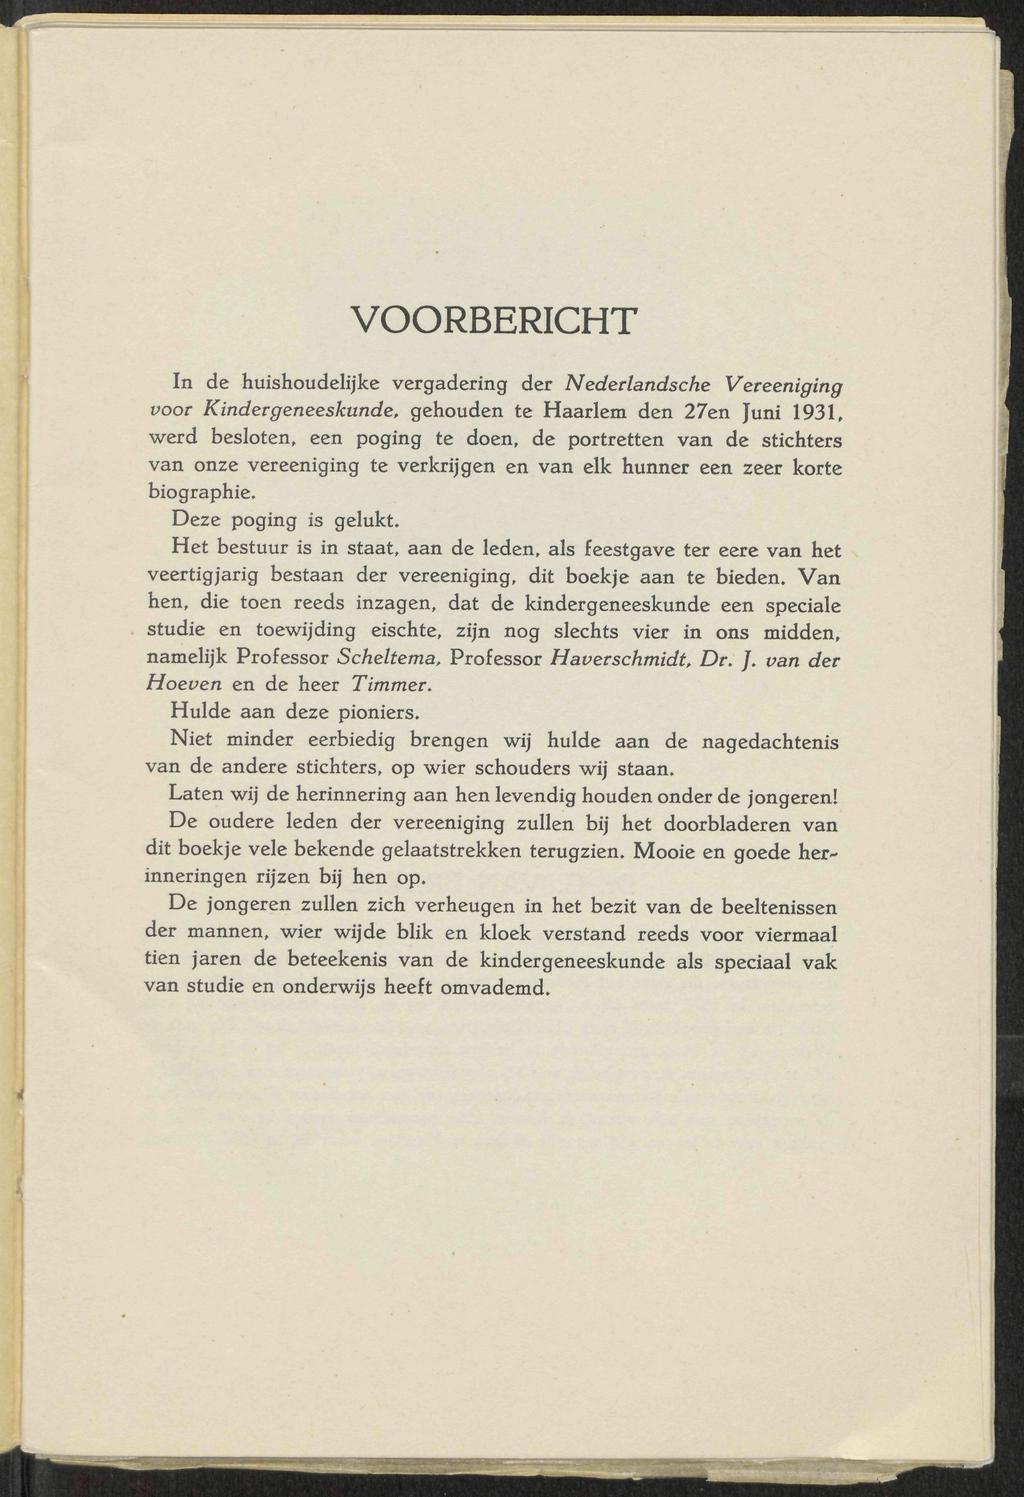 VOORBERICHT In de huishoudelijke vergadering der Nederlandsche Vereeniging yoor Kindergeneeskunde, gehouden te Haarlem den 27en Juni 1931, werd besloten, een poging te doen, de portretten van de